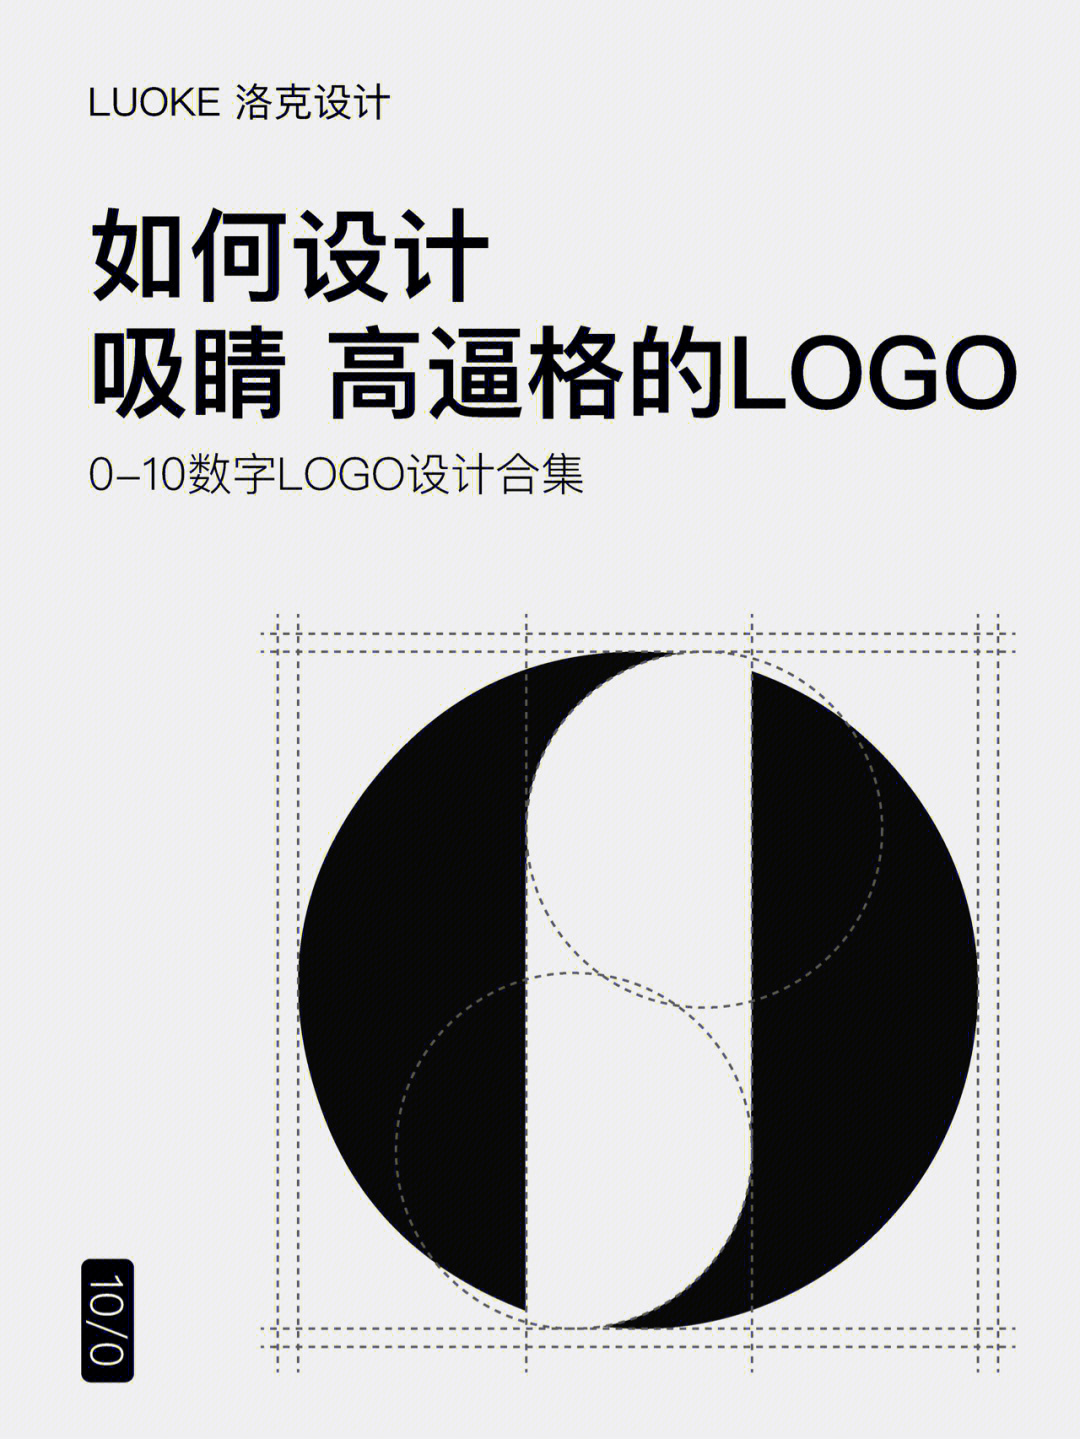 数字0和8的logo设计图片